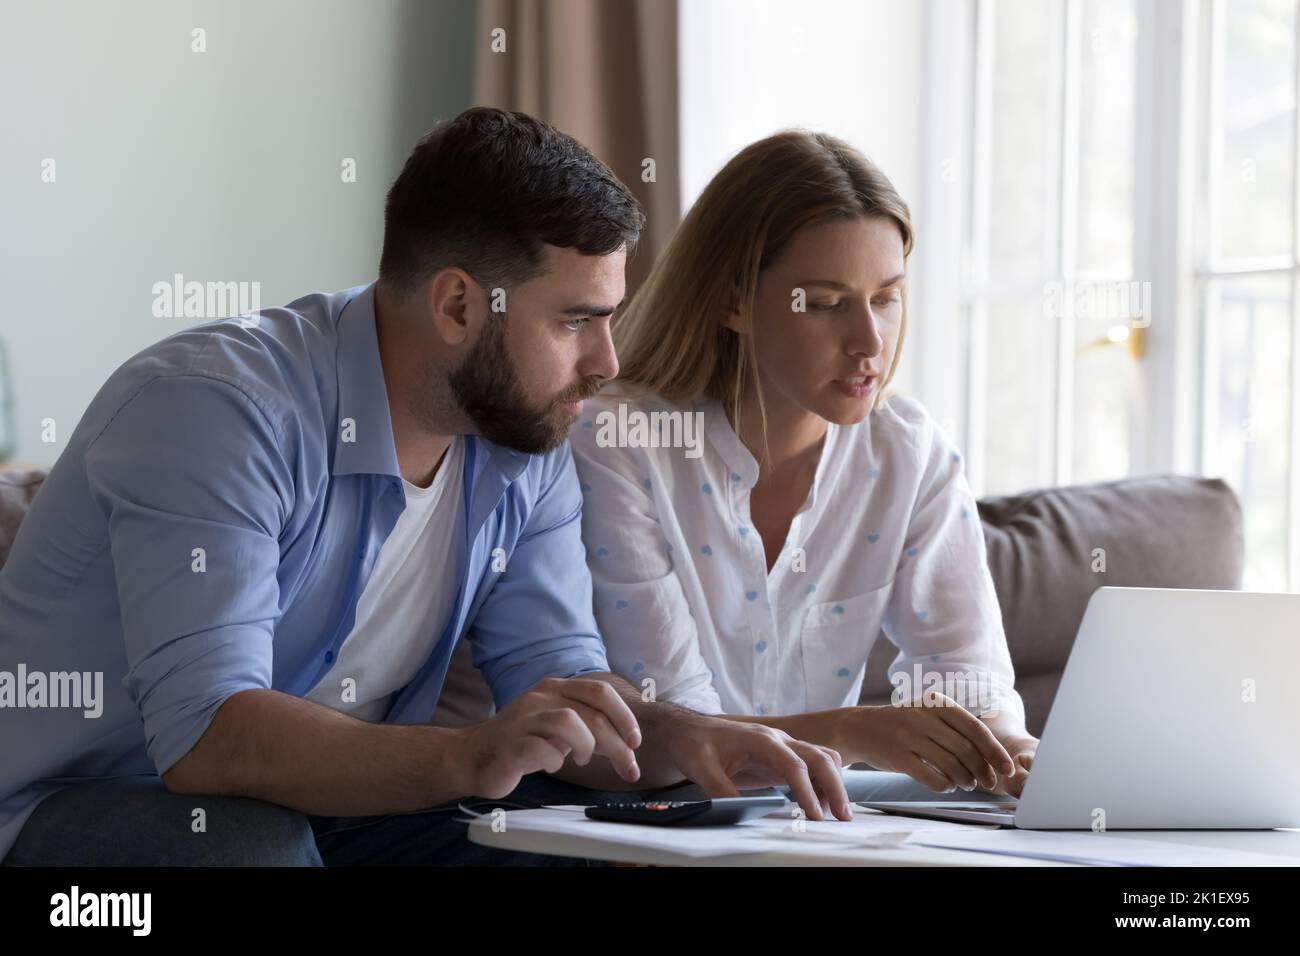 Femme sérieuse et concentrée montrant l'application de paiement domestique en ligne à son mari Banque D'Images